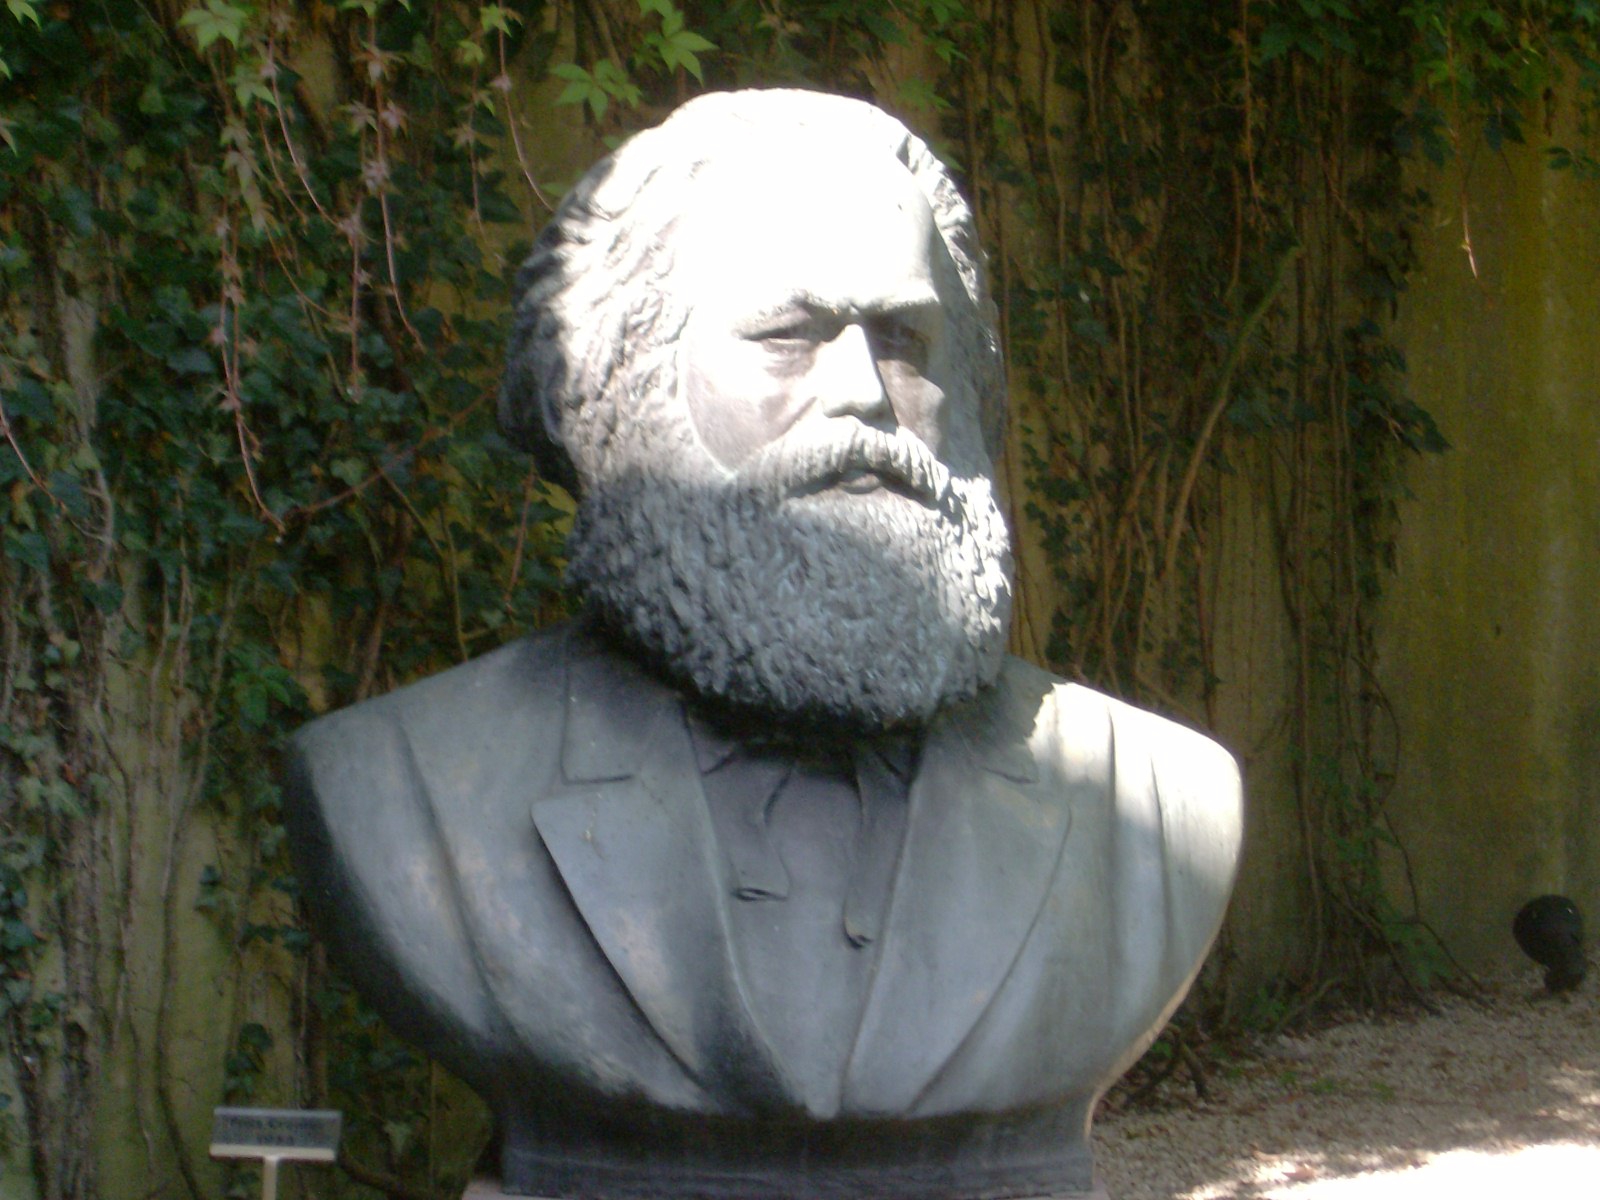 Farbfoto: Die 1953 von dem Bildhauer Fritz Cremer geschaffene Büste von Karl Marx in dem Garten des Karl Marx Hauses in der Brückenstraße Nummer 10 in Trier im Jahre 2012. Fotograf: Ralph Ivert.